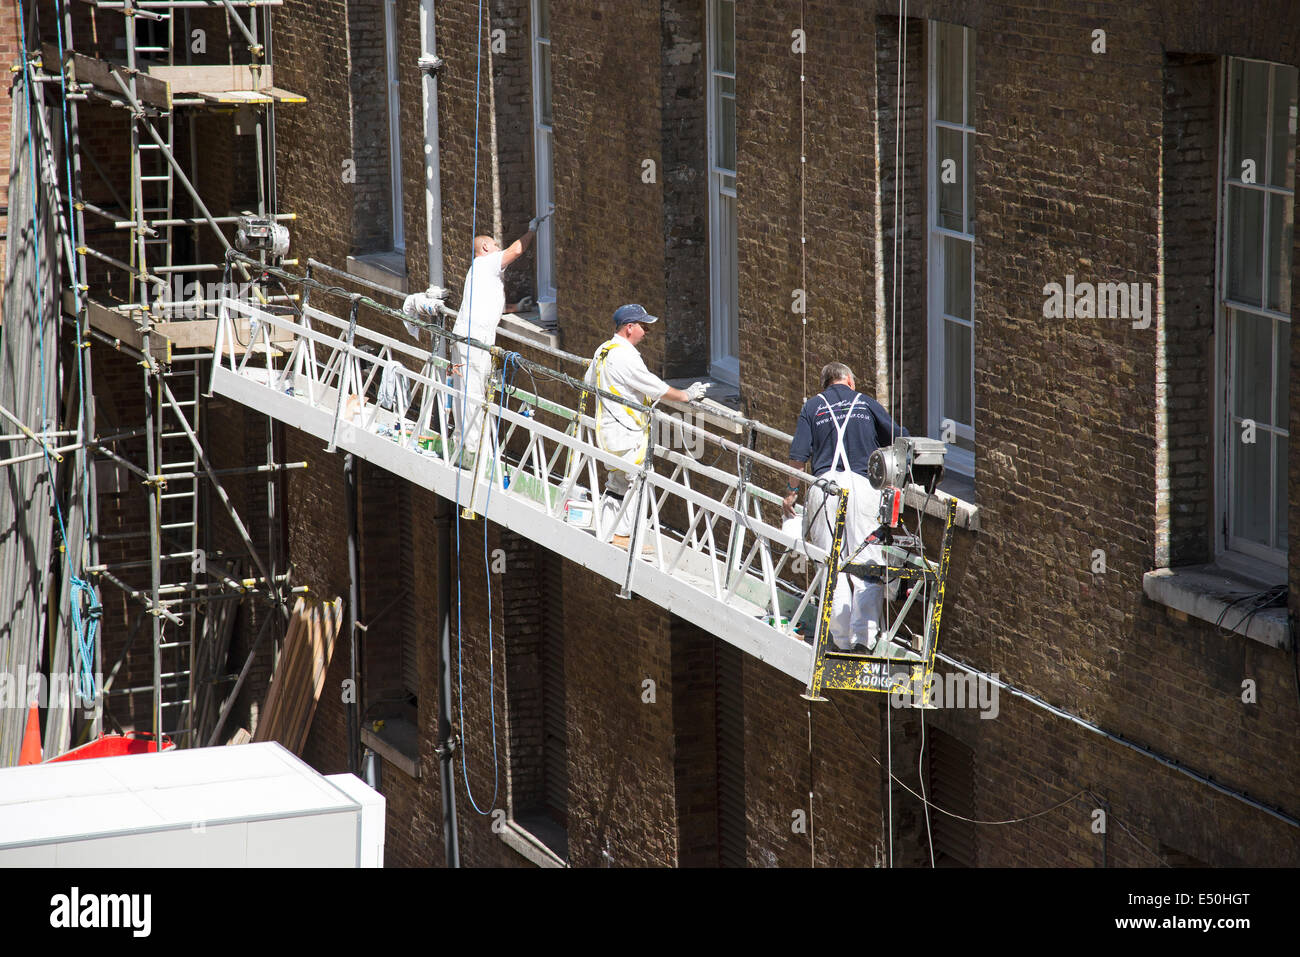 Durée du contrat de travail des peintres sur l'aile ouest de Somerset House dans le centre de Londres Royaume-uni suspendu d'un berceau Banque D'Images